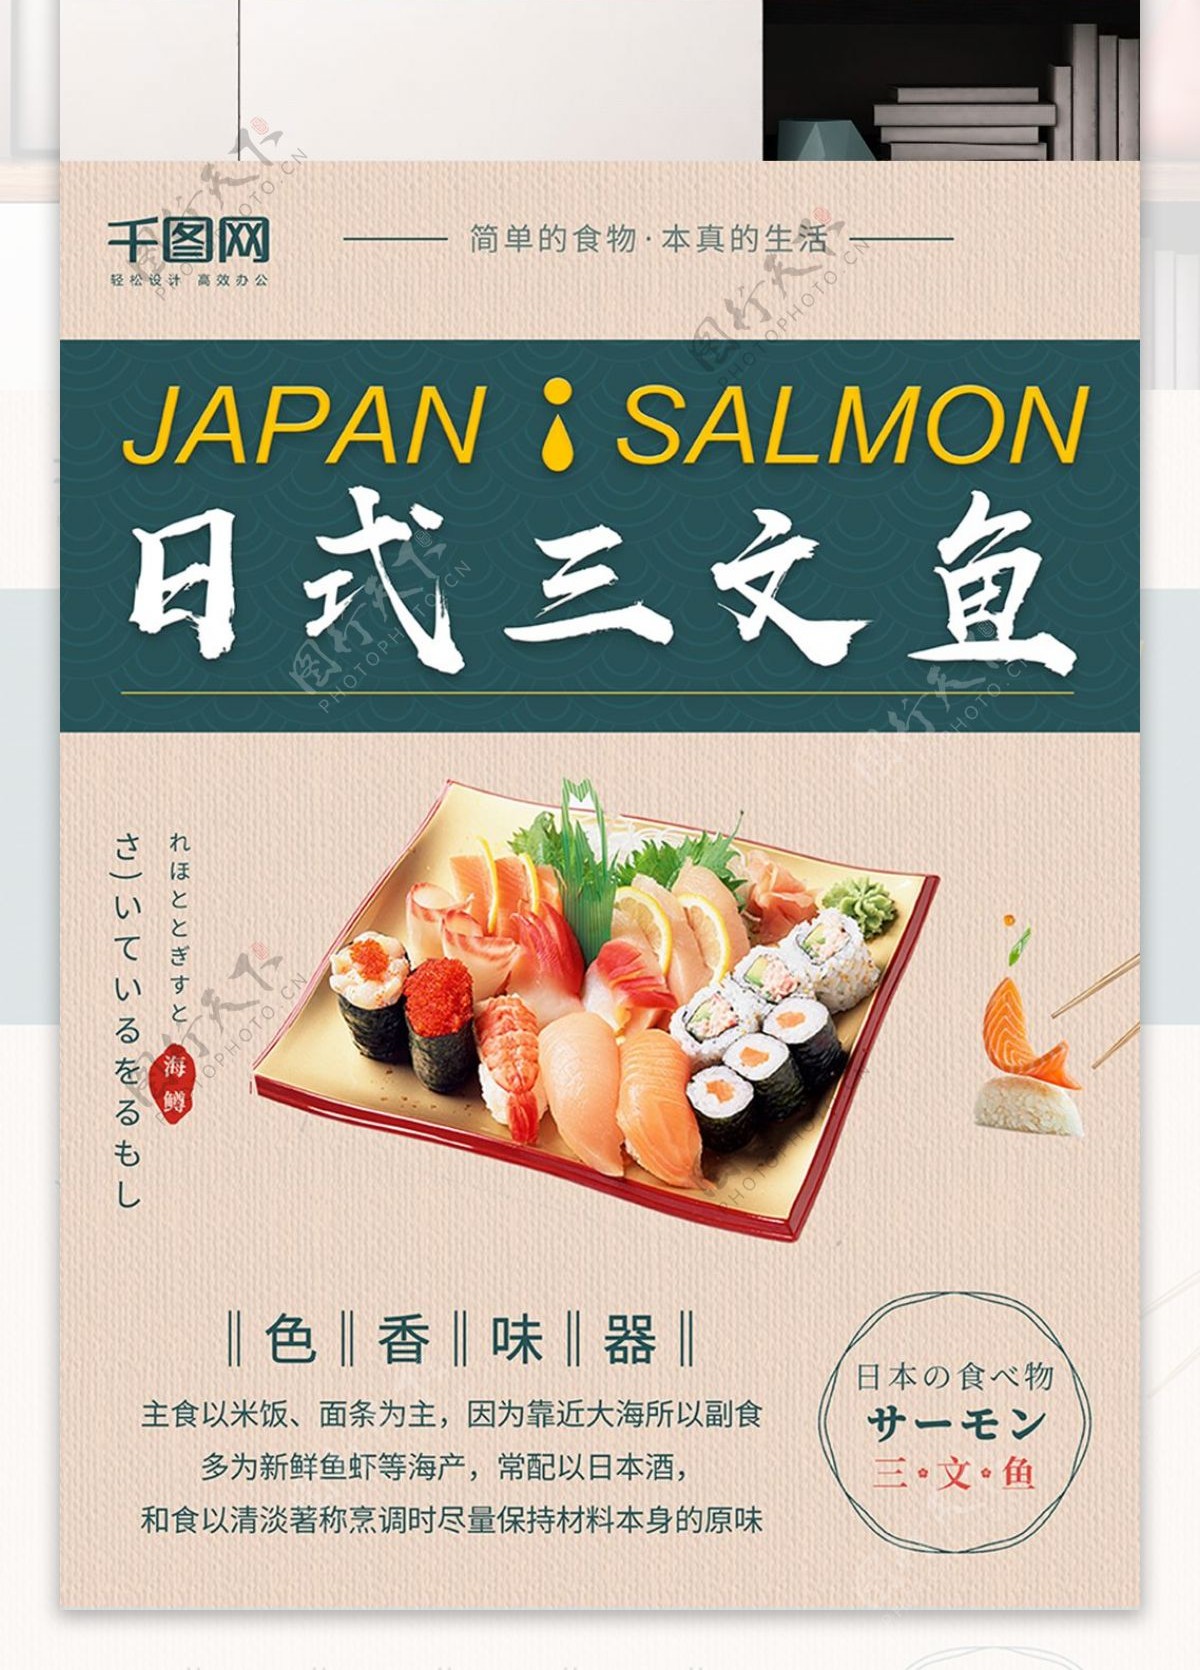 原创日式美食三文鱼宣传海报